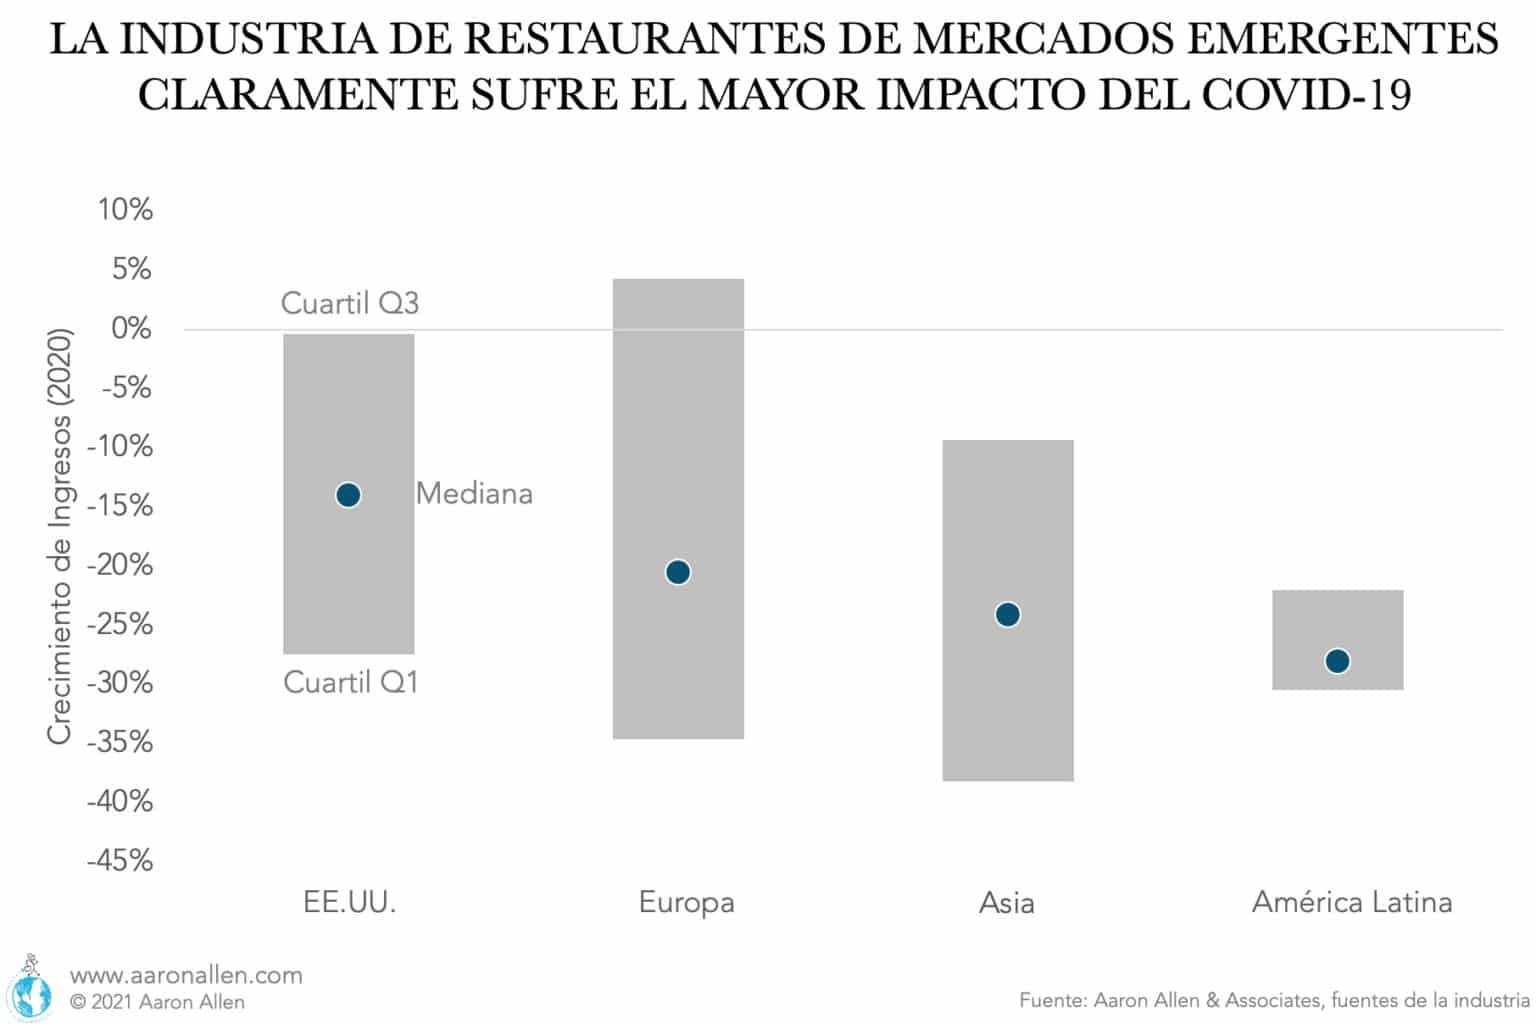 Las empresas de restaurantes que cotizan en bolsa alrededor del mundo sintieron los impactos de la pandemia. La crisis provocó una importante pérdida de ingresos para la mayoría de las empresas del sector. Sin embargo, las pérdidas en los mercados emergentes, como América Latina y Asia, fueron considerablemente más sustanciales que las de los mercados maduros como los EE.UU. Si bien la pérdida de ingresos mediana alcanzó el 14% entre las empresas de servicios de alimentos de EE.UU., la misma fue de -24% en Asia y -28 % en Latinoamérica. La recuperación de la pandemia de coronavirus es claramente más rápida en los mercados maduros que en las economías en desarrollo, por lo que es el momento adecuado para invertir en cadenas estadounidenses. Para la industria de servicios de alimentos, en particular, comprar empresas estadounidenses puede tener beneficios significativos: desde una menor volatilidad hasta la diversificación de la cartera y el acceso a centros de innovación y talento. También puede significar comprar al franquiciador en lugar del franquiciado.